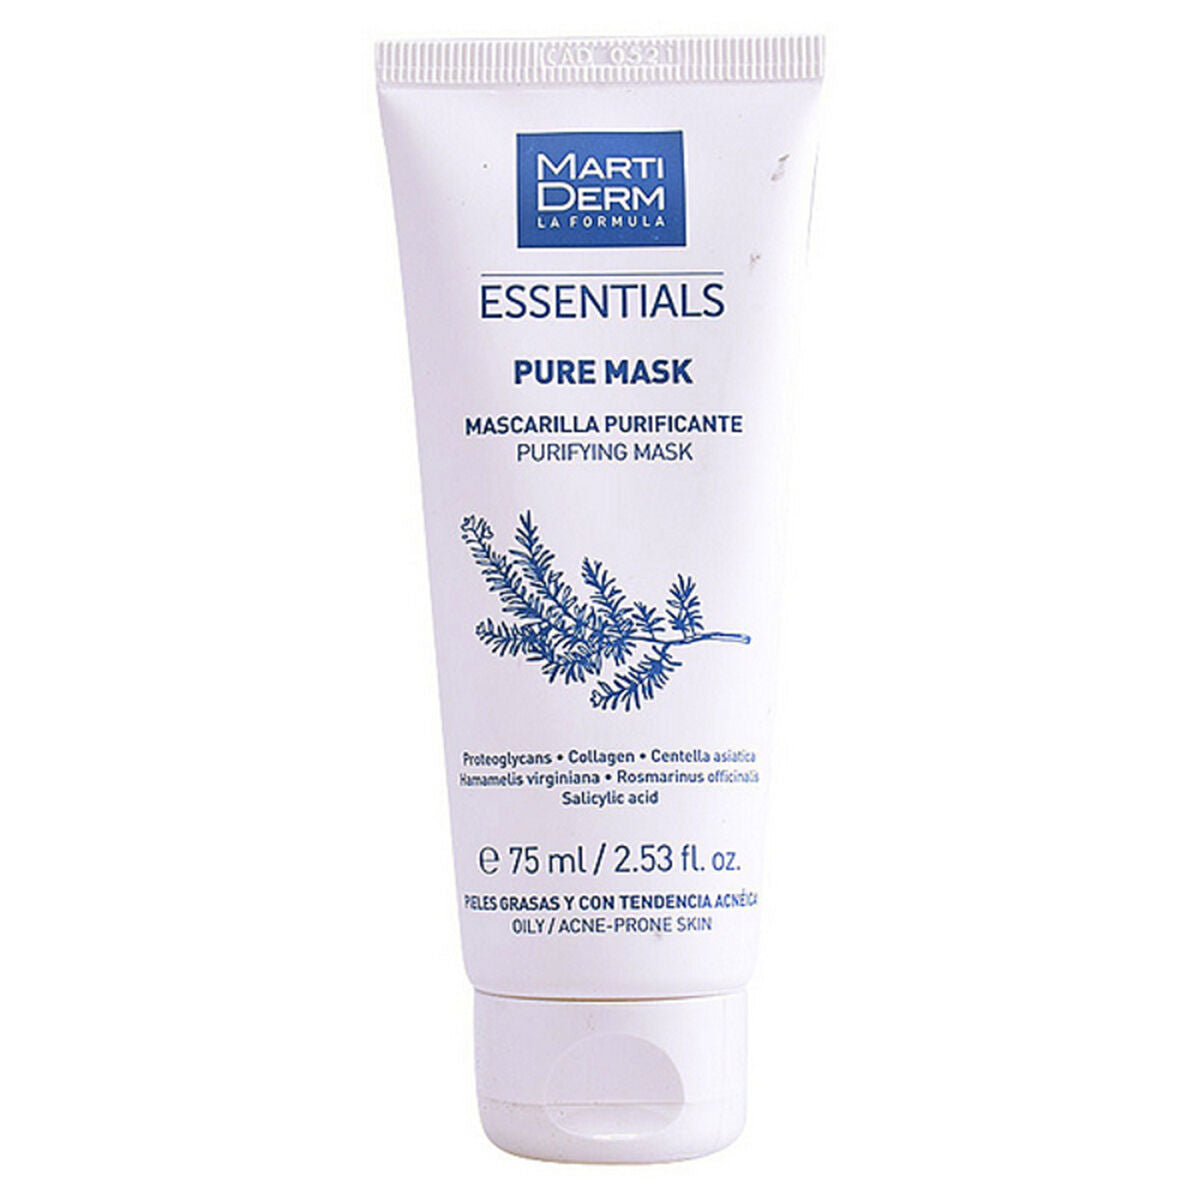 Reinigende Gesichtsmaske Essentials Martiderm Puremask Oily (75 ml)